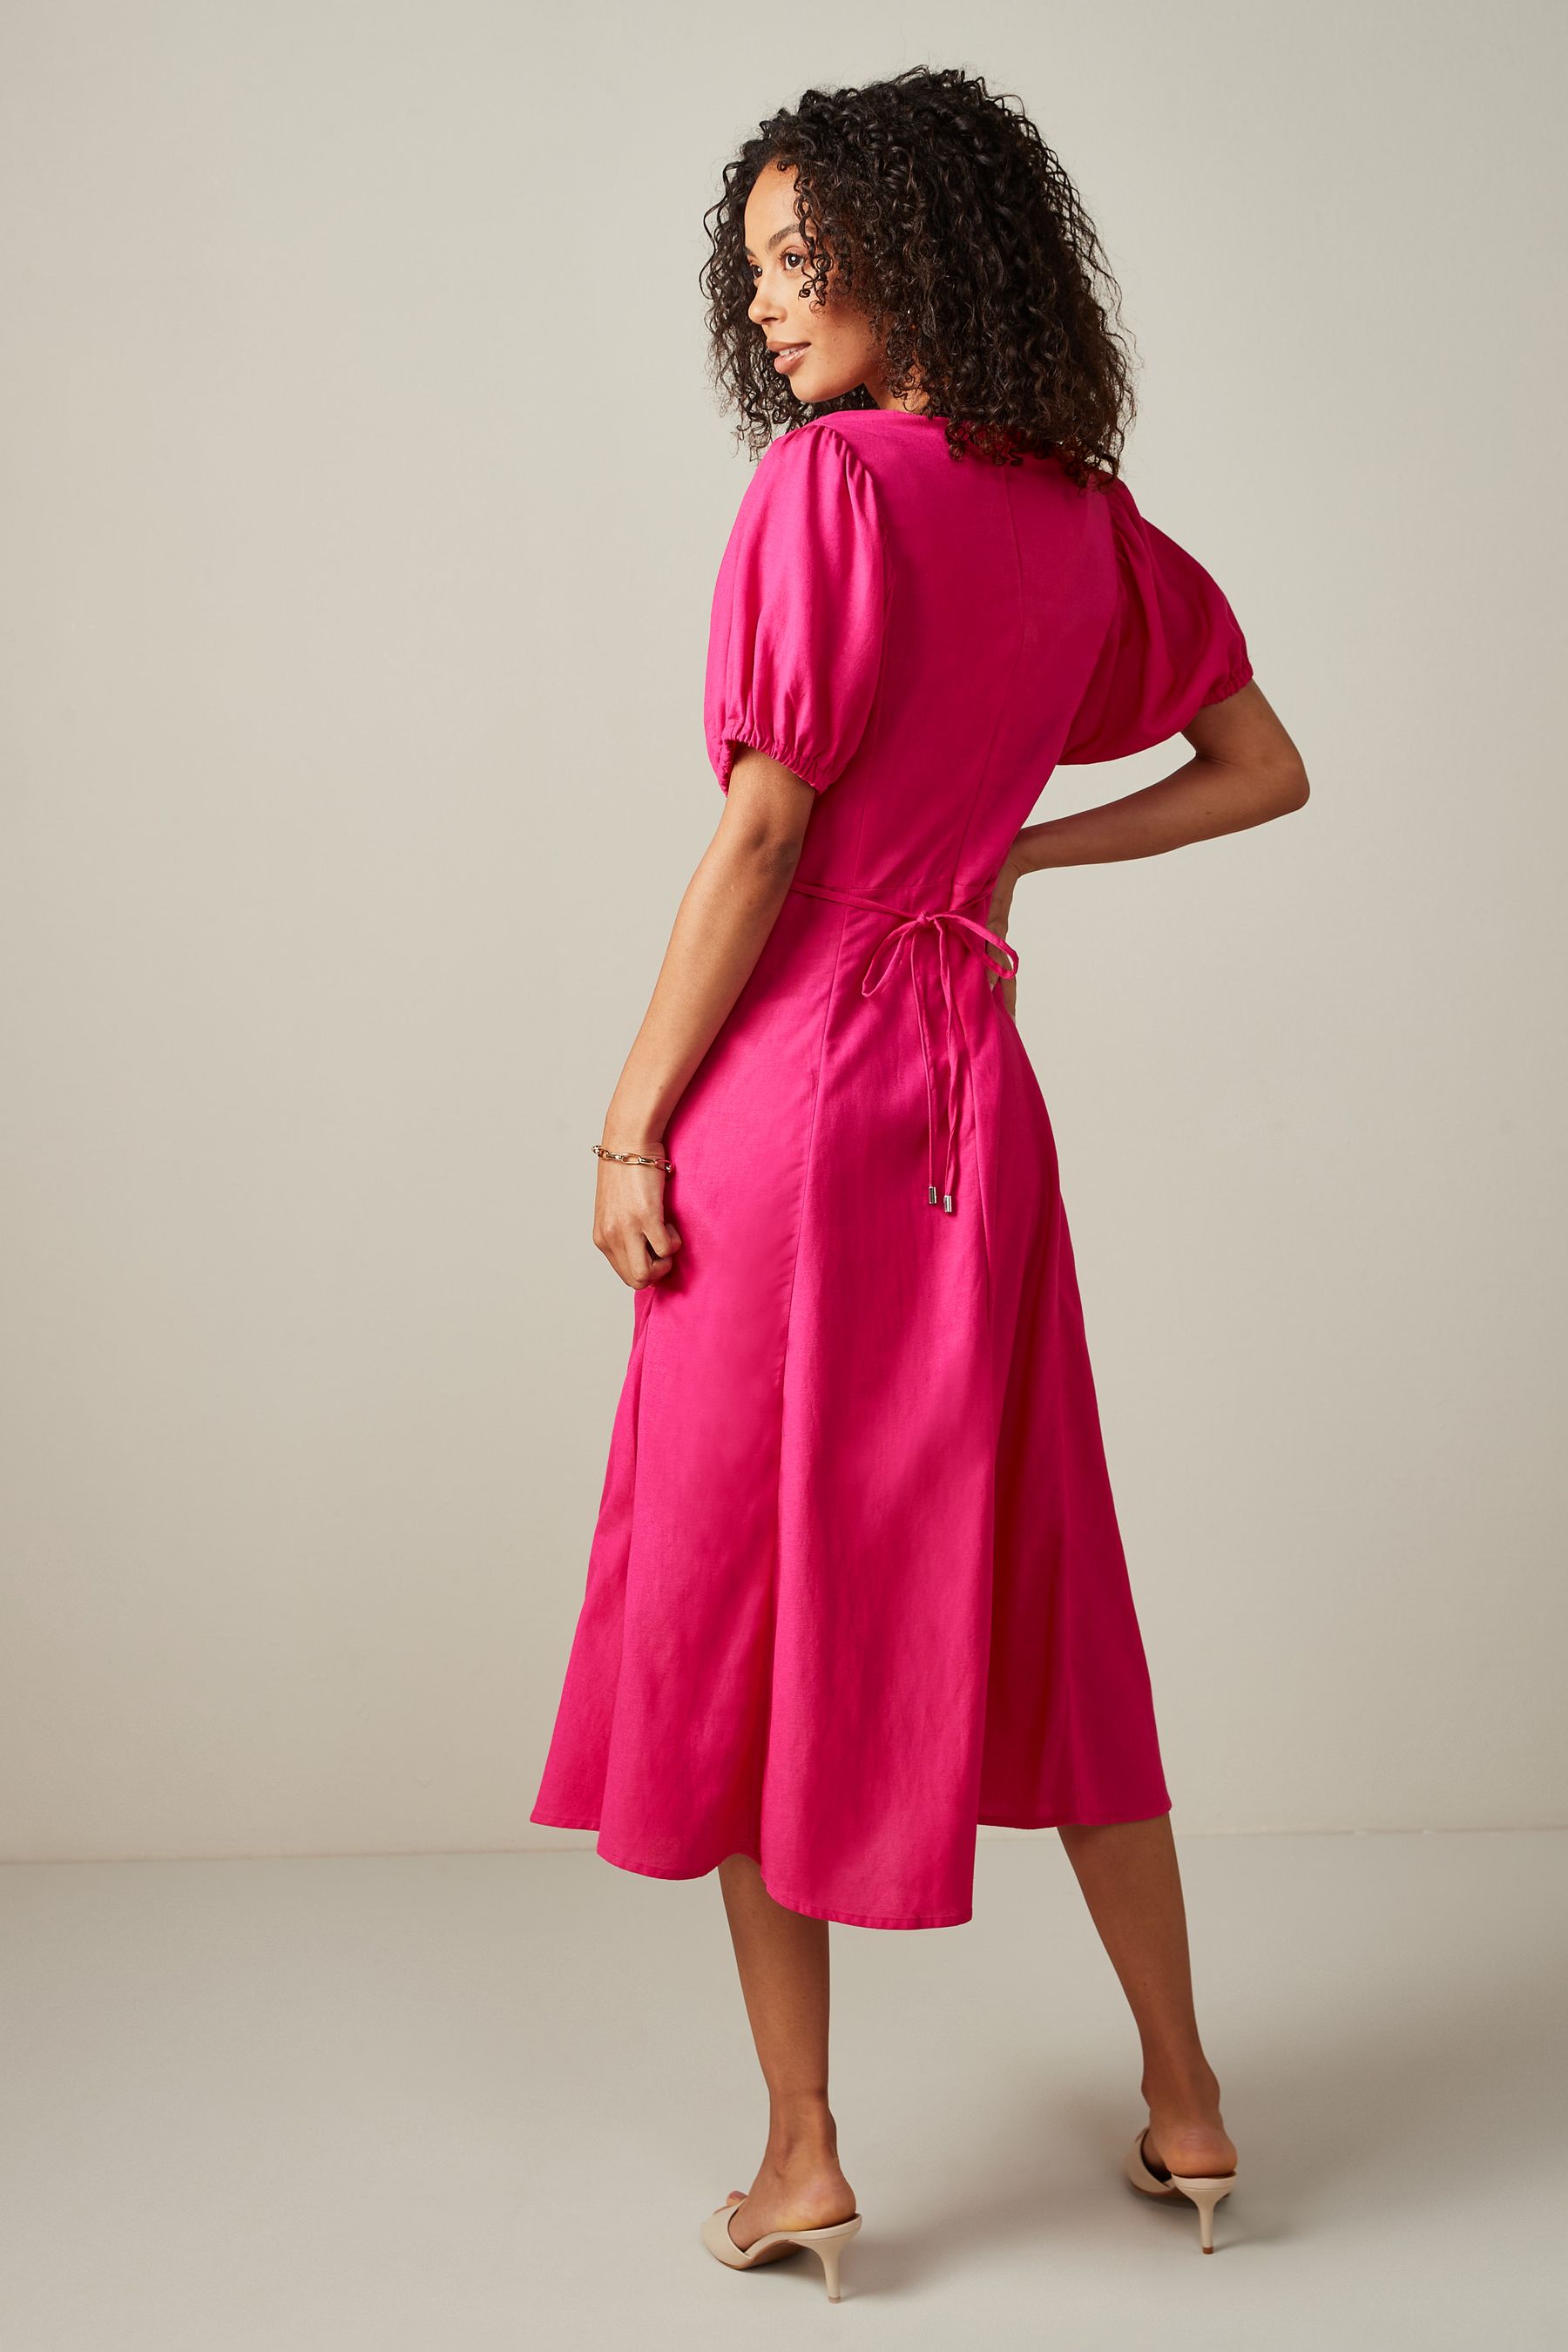 Buy Linen Blend Empire Line Dress from Next Ireland